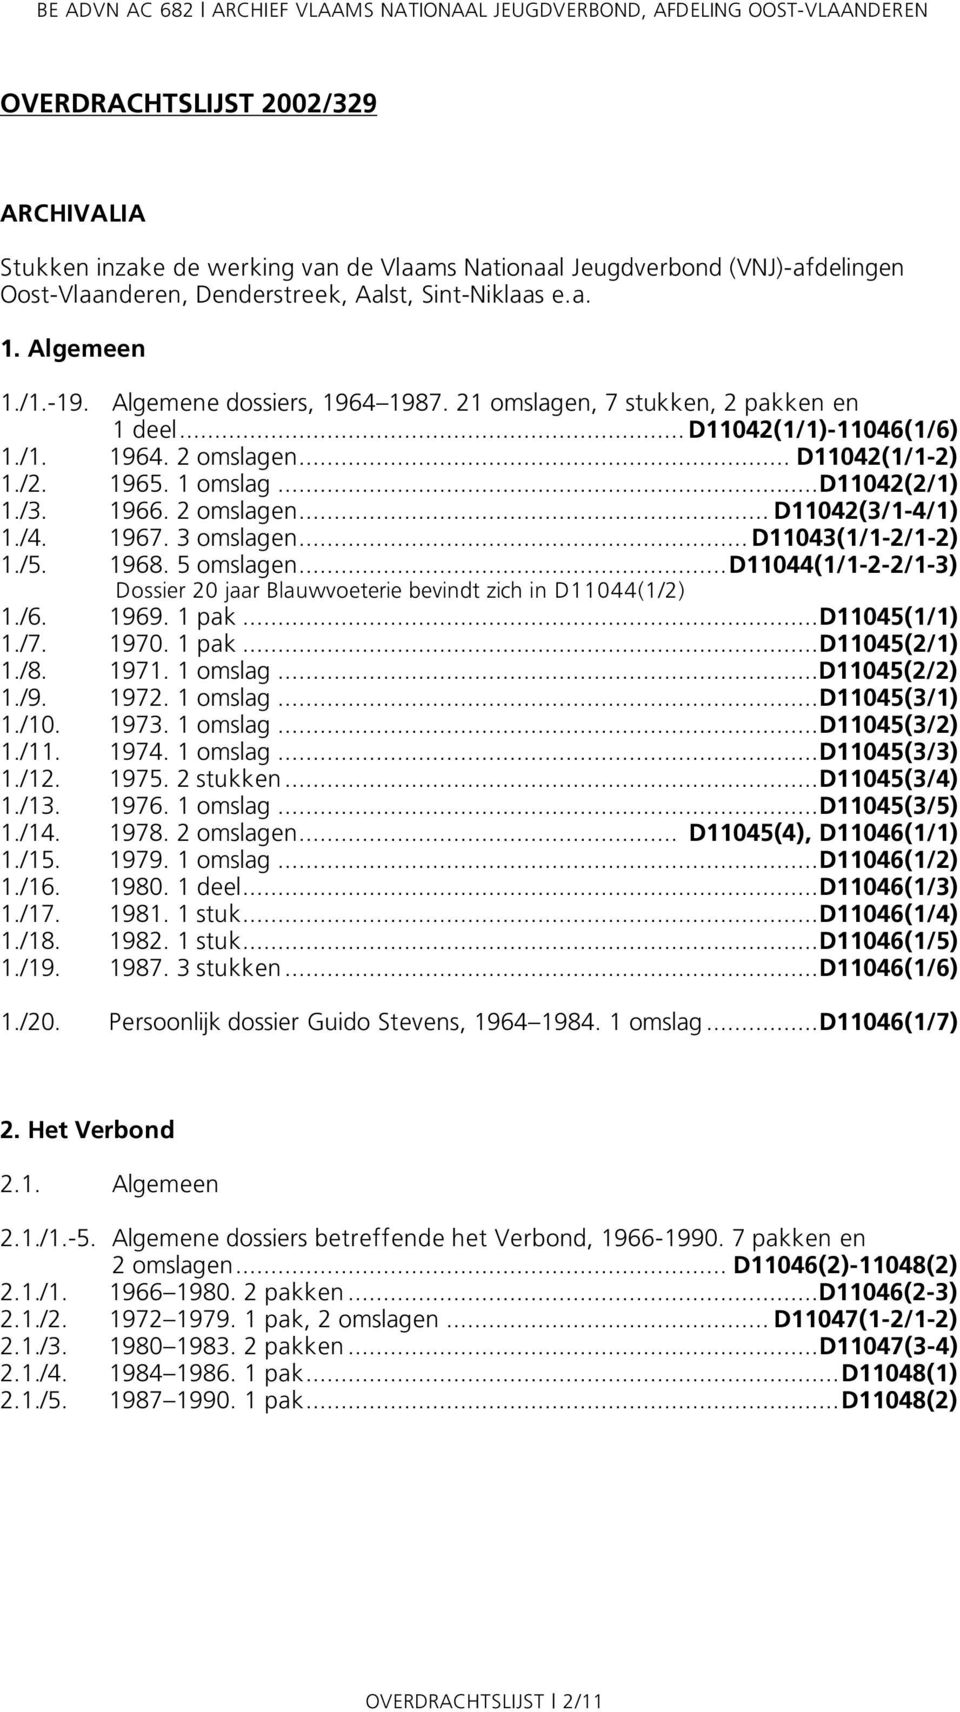 /4. 1967. 3 omslagen... D11043(1/1-2/1-2) 1./5. 1968. 5 omslagen...d11044(1/1-2-2/1-3) Dossier 20 jaar Blauwvoeterie bevindt zich in D11044(1/2) 1./6. 1969. 1 pak...d11045(1/1) 1./7. 1970. 1 pak...d11045(2/1) 1.